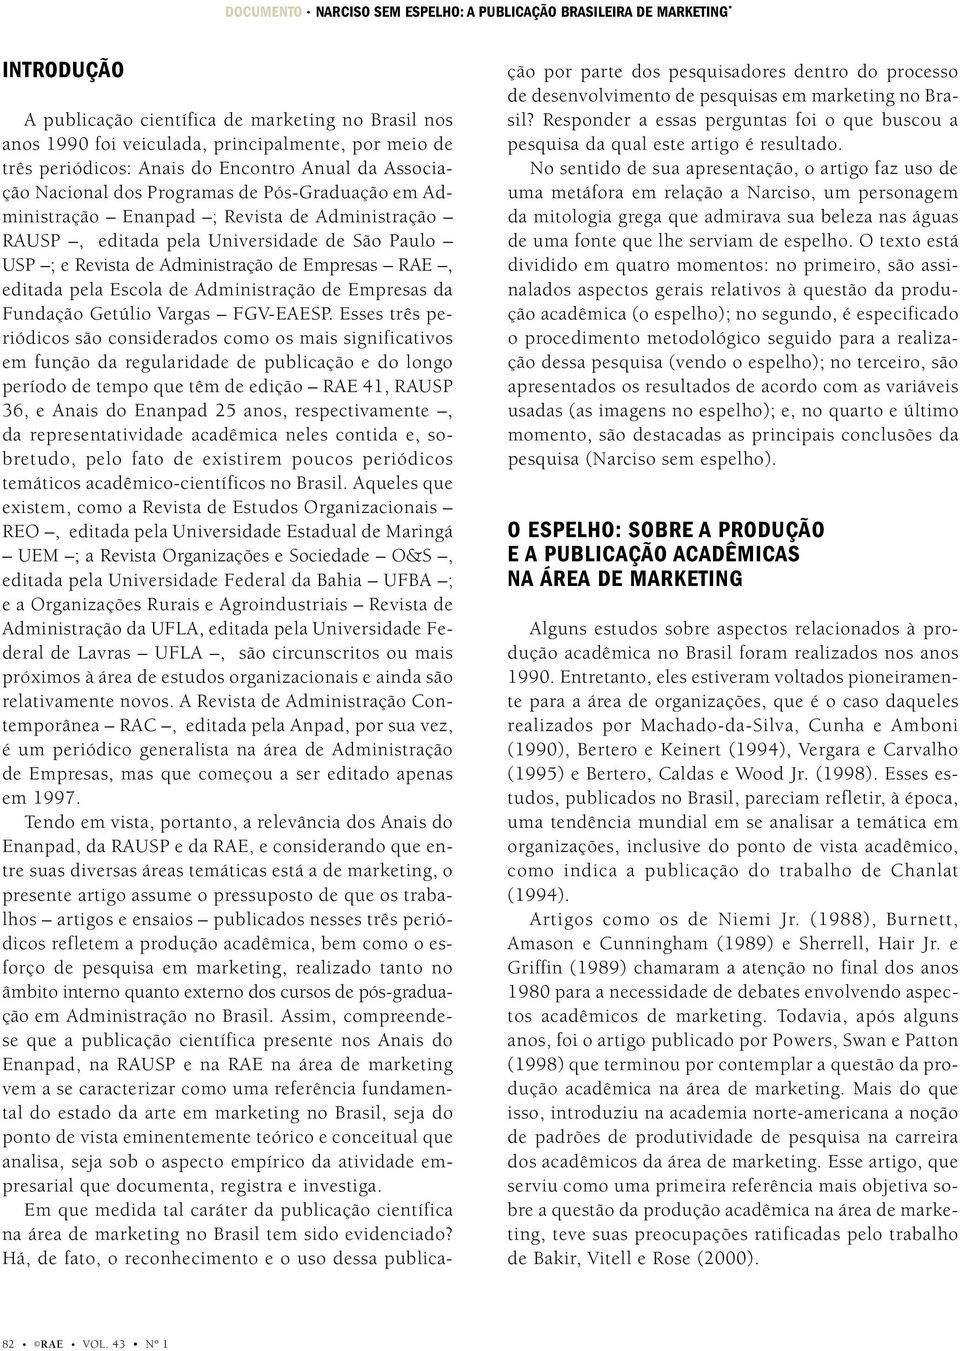 Revista de Administração de Empresas RAE, editada pela Escola de Administração de Empresas da Fundação Getúlio Vargas FGV-EAESP.